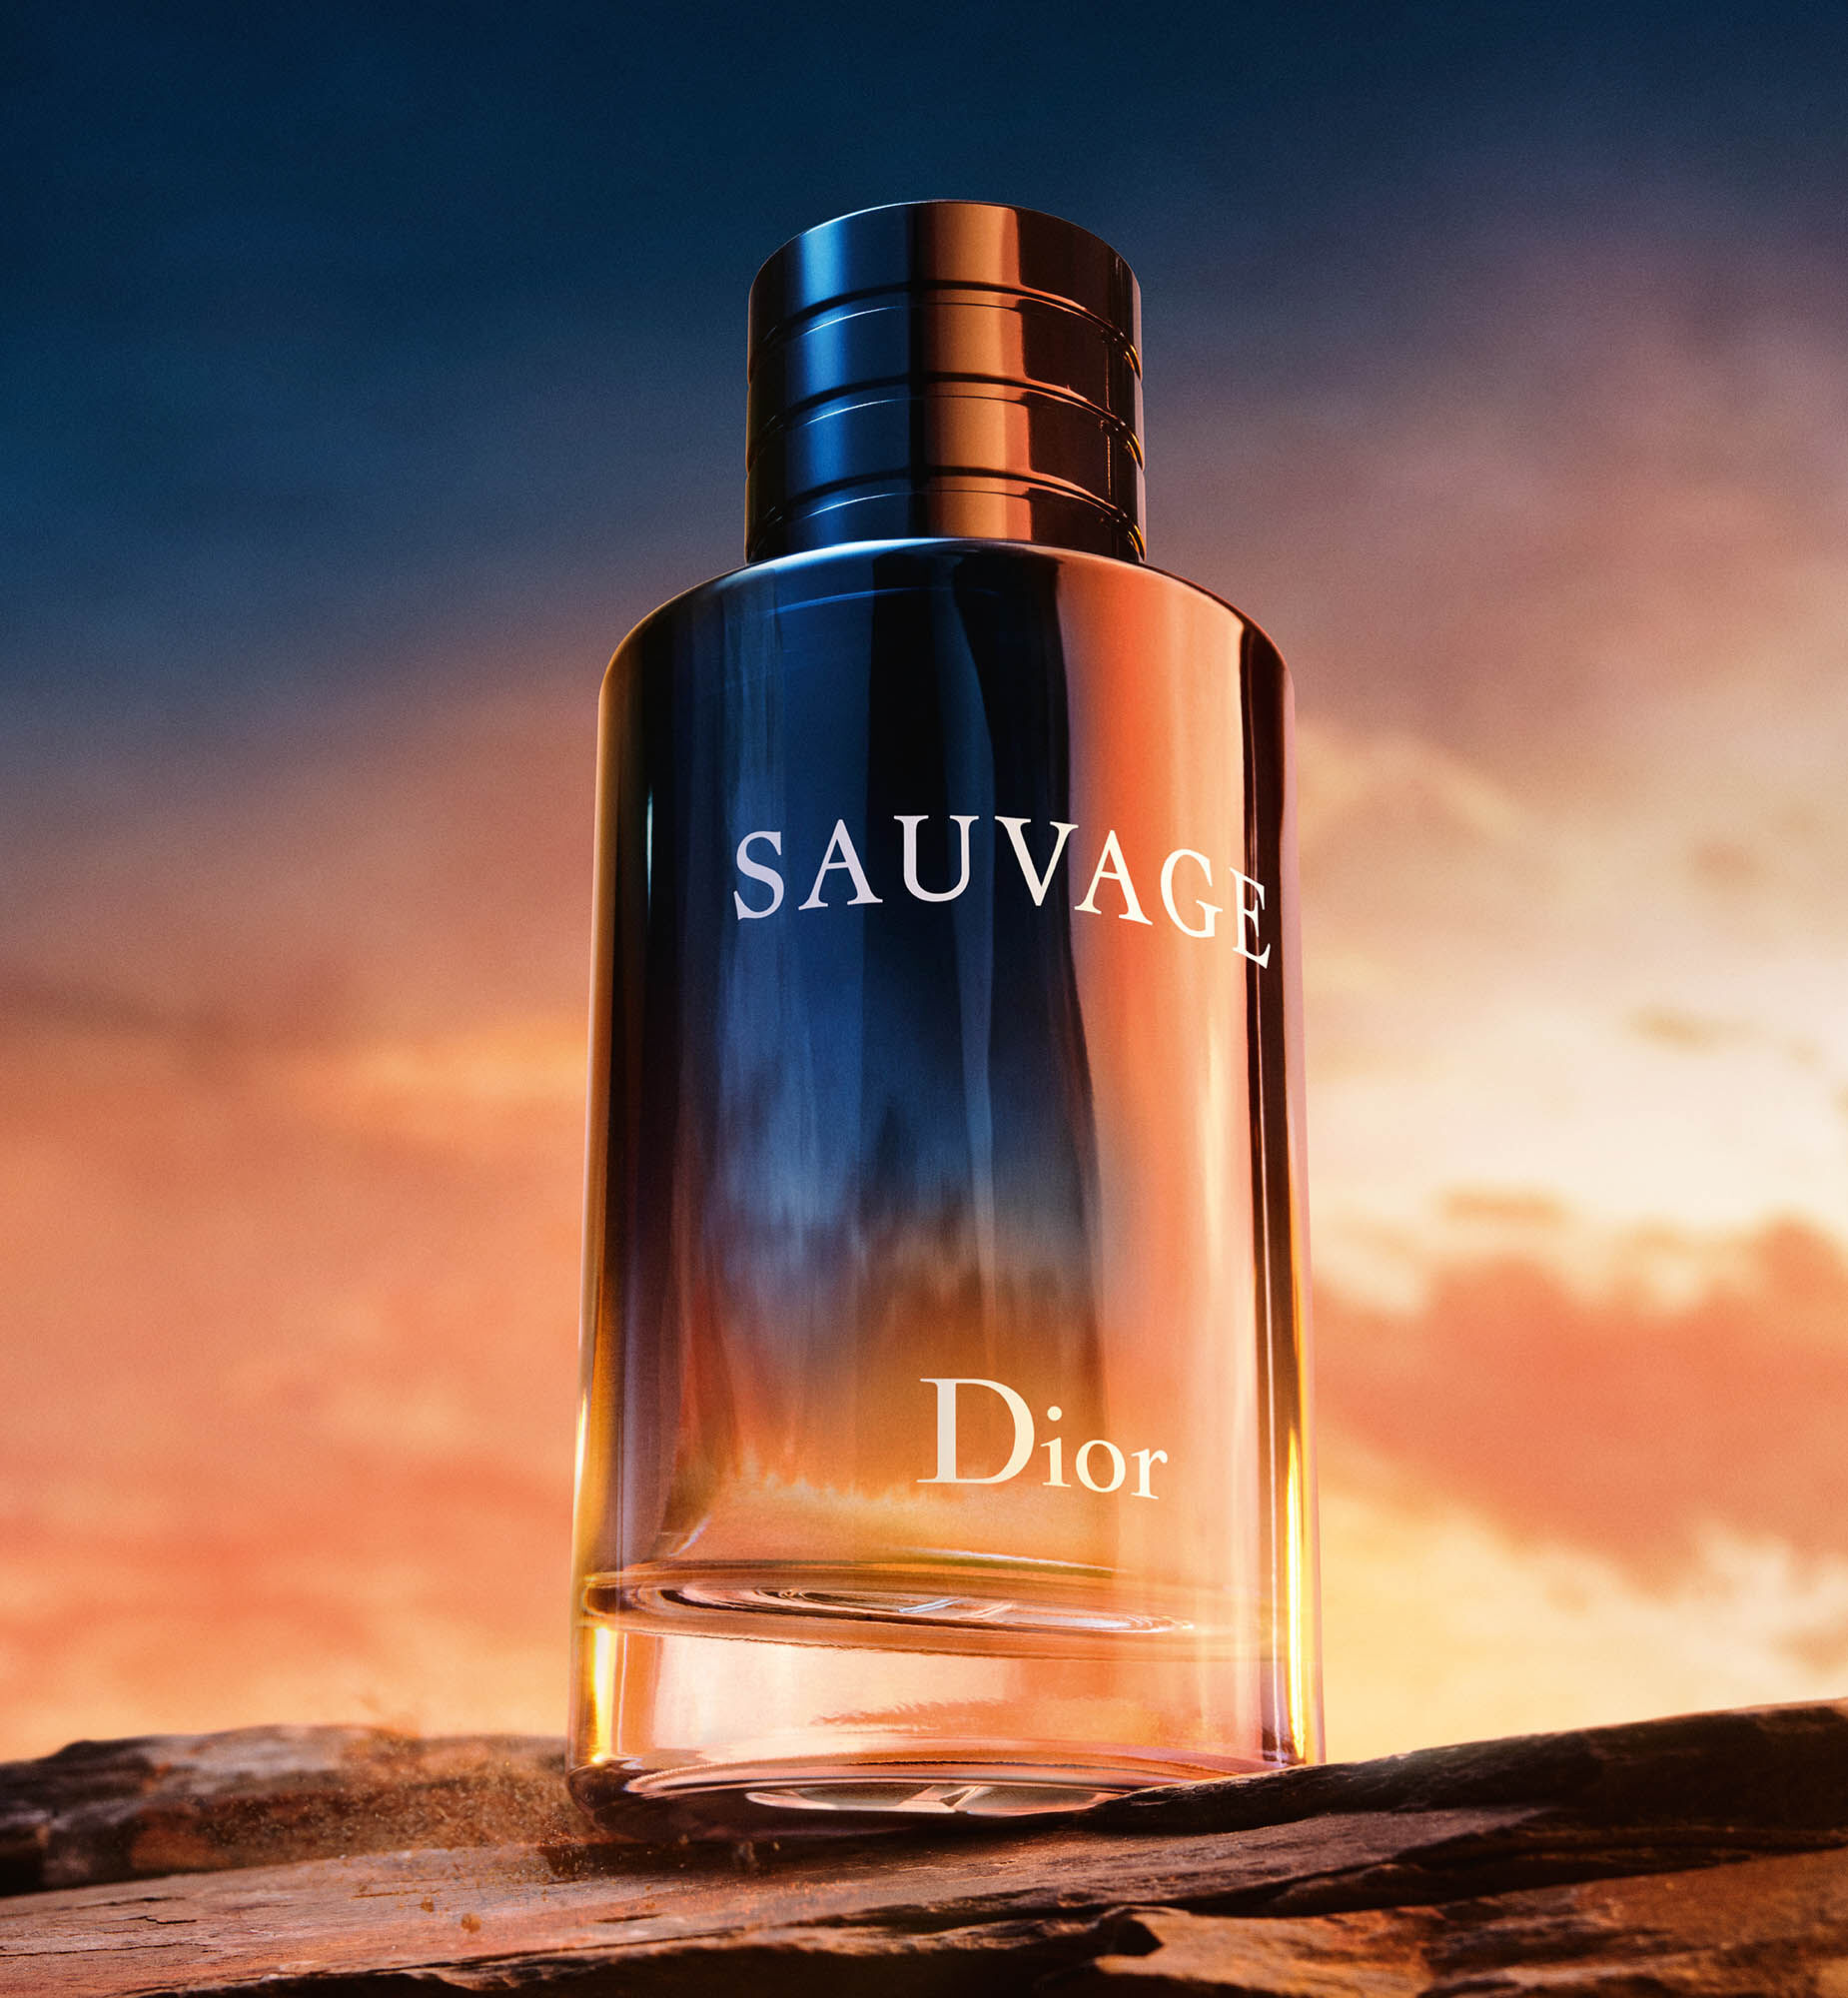 Sauvage Eau de Toilette: Iconic Dior Men's Fragrance | DIOR